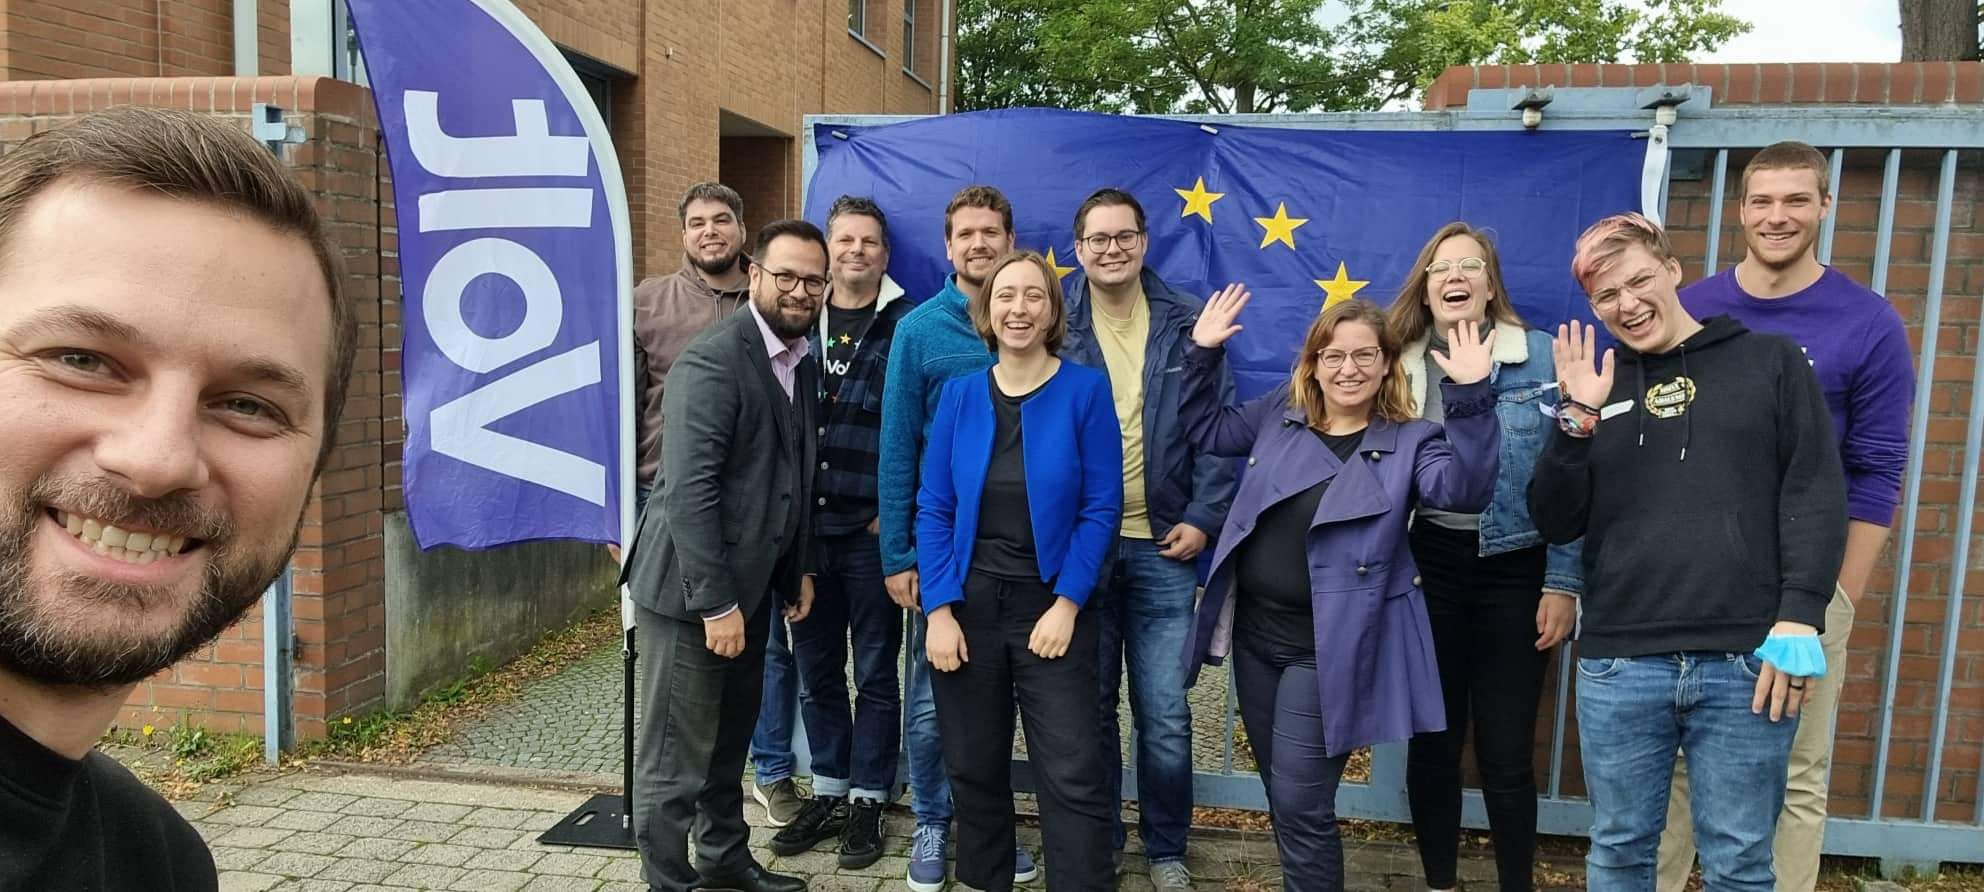 Team Dortmung mit EU-Flagge im Rücken